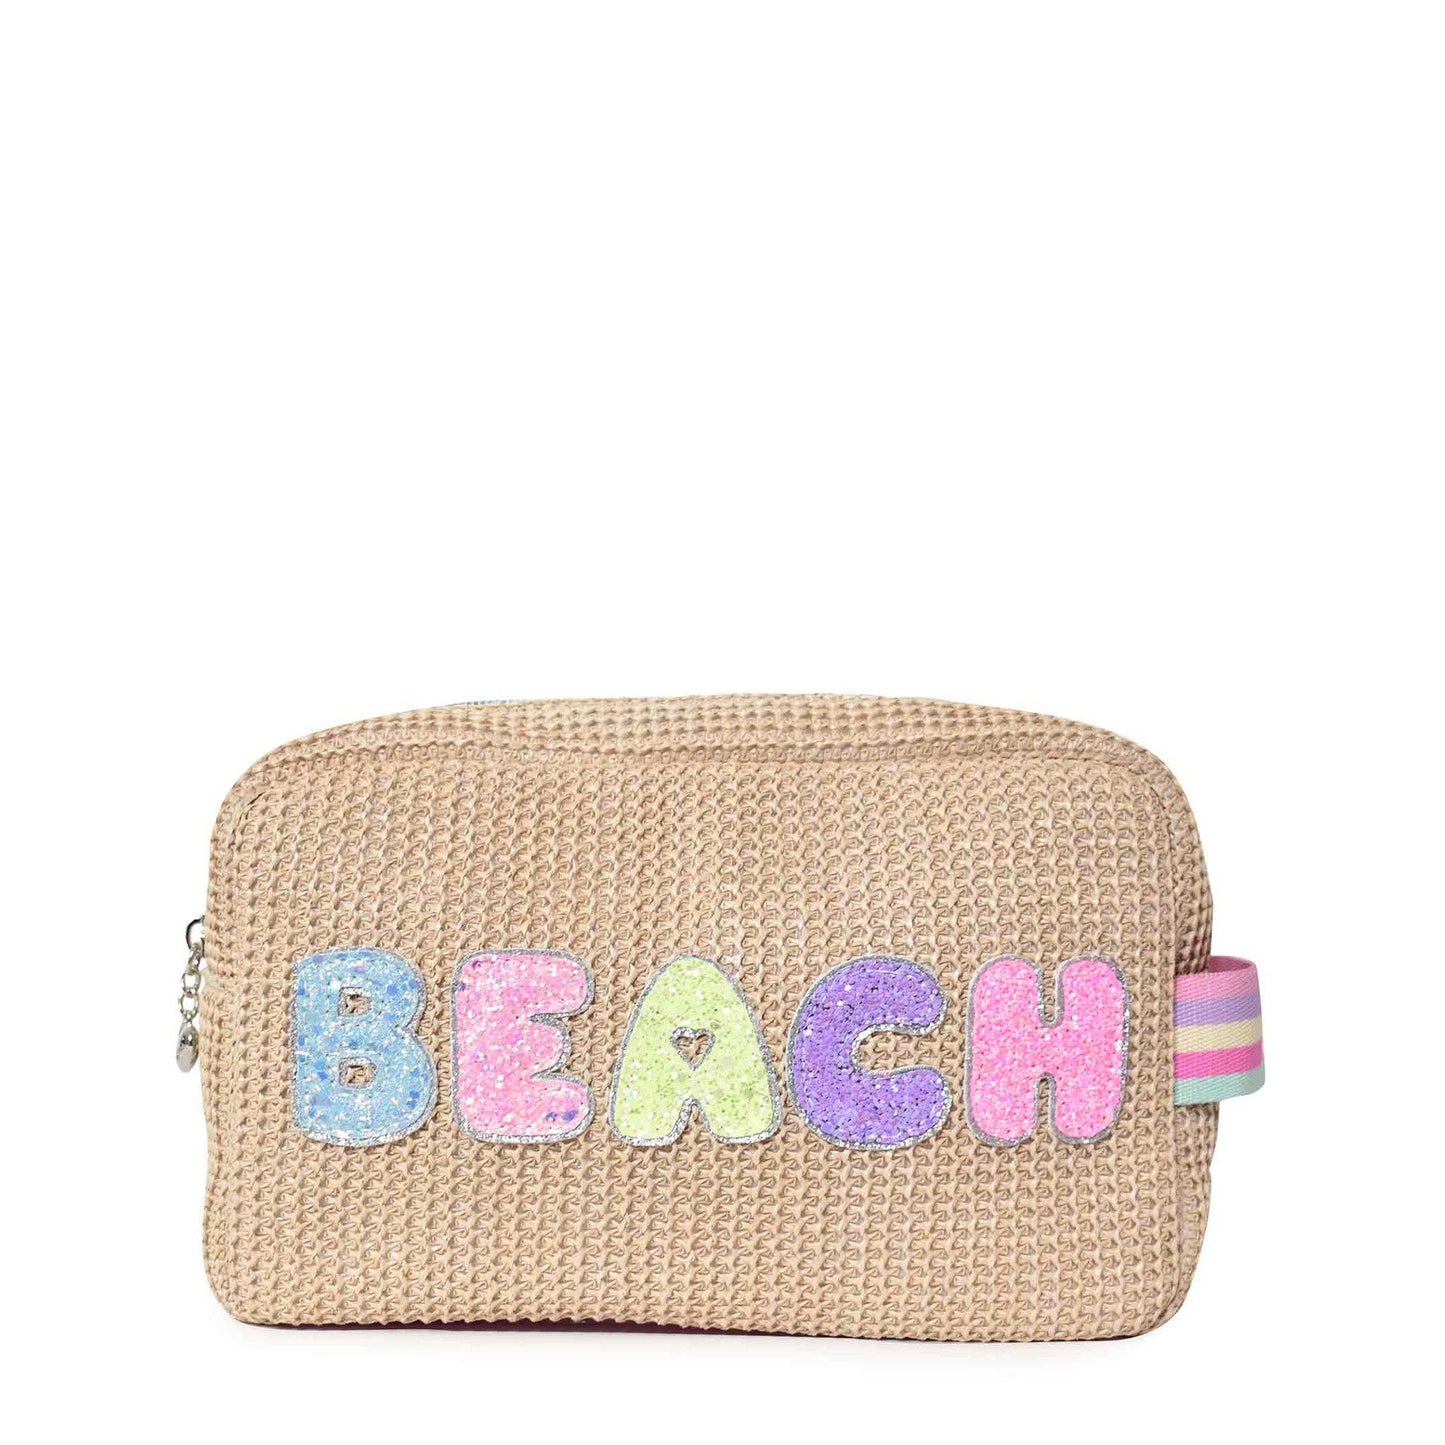 'Beach' Straw Pouch